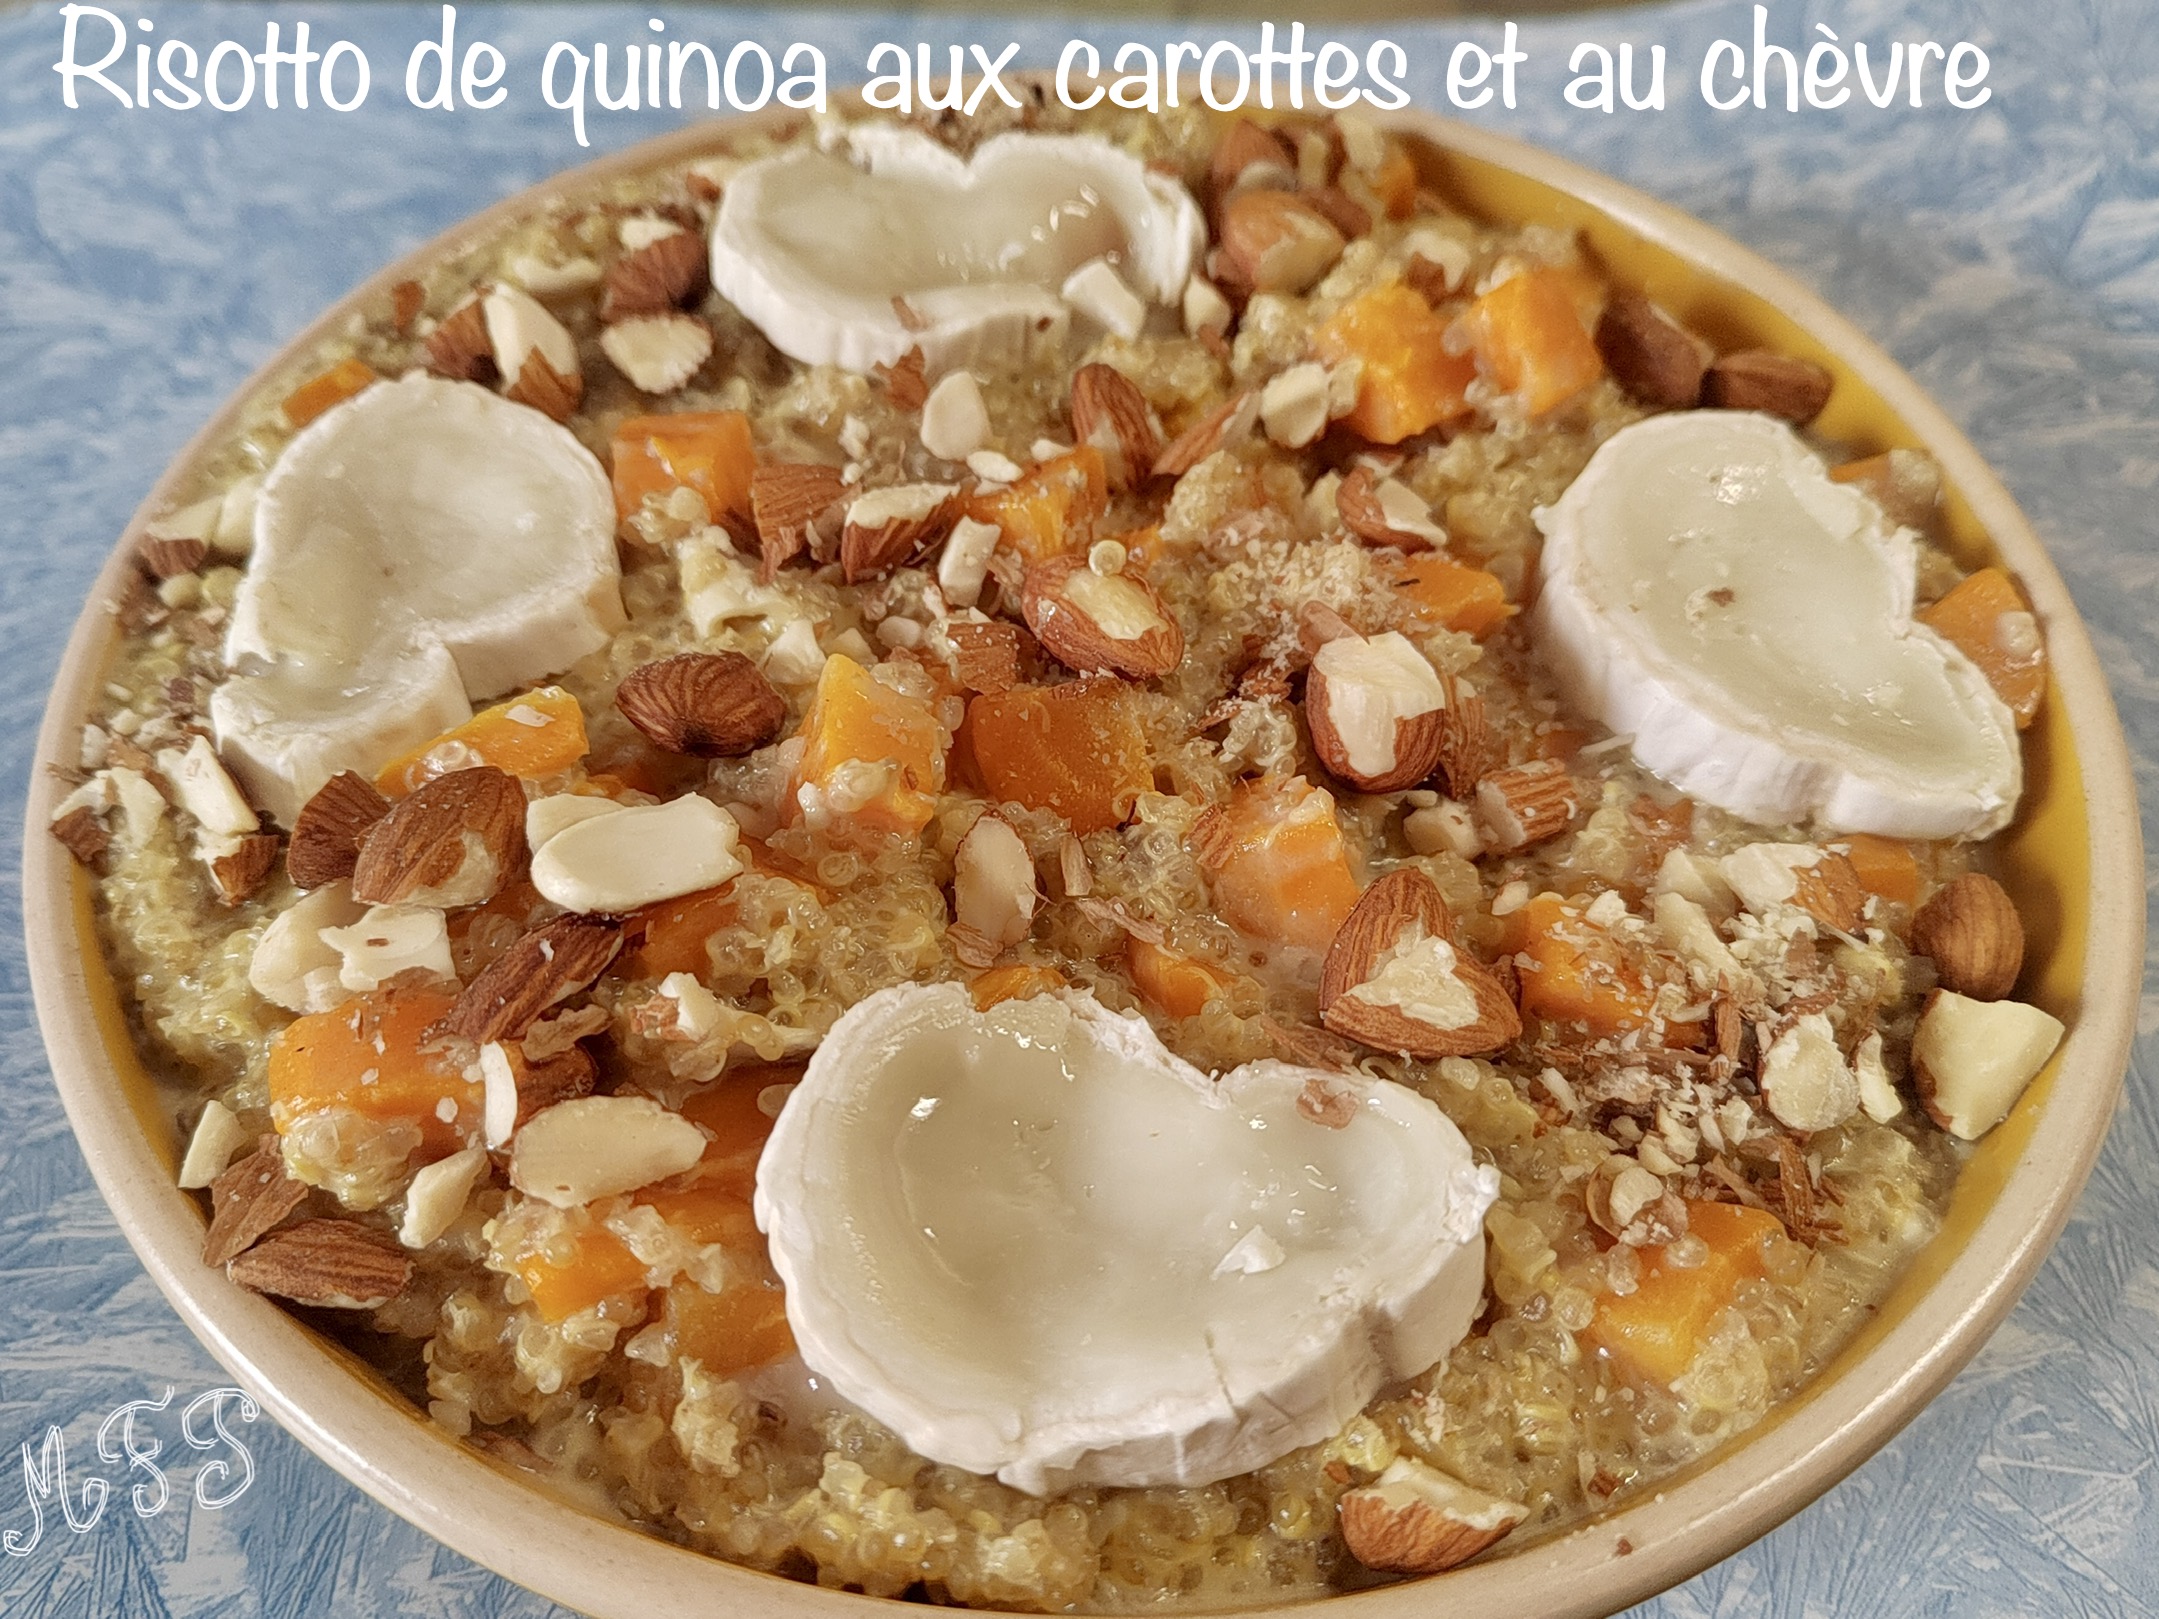 Risotto de quinoa aux carottes et chèvre